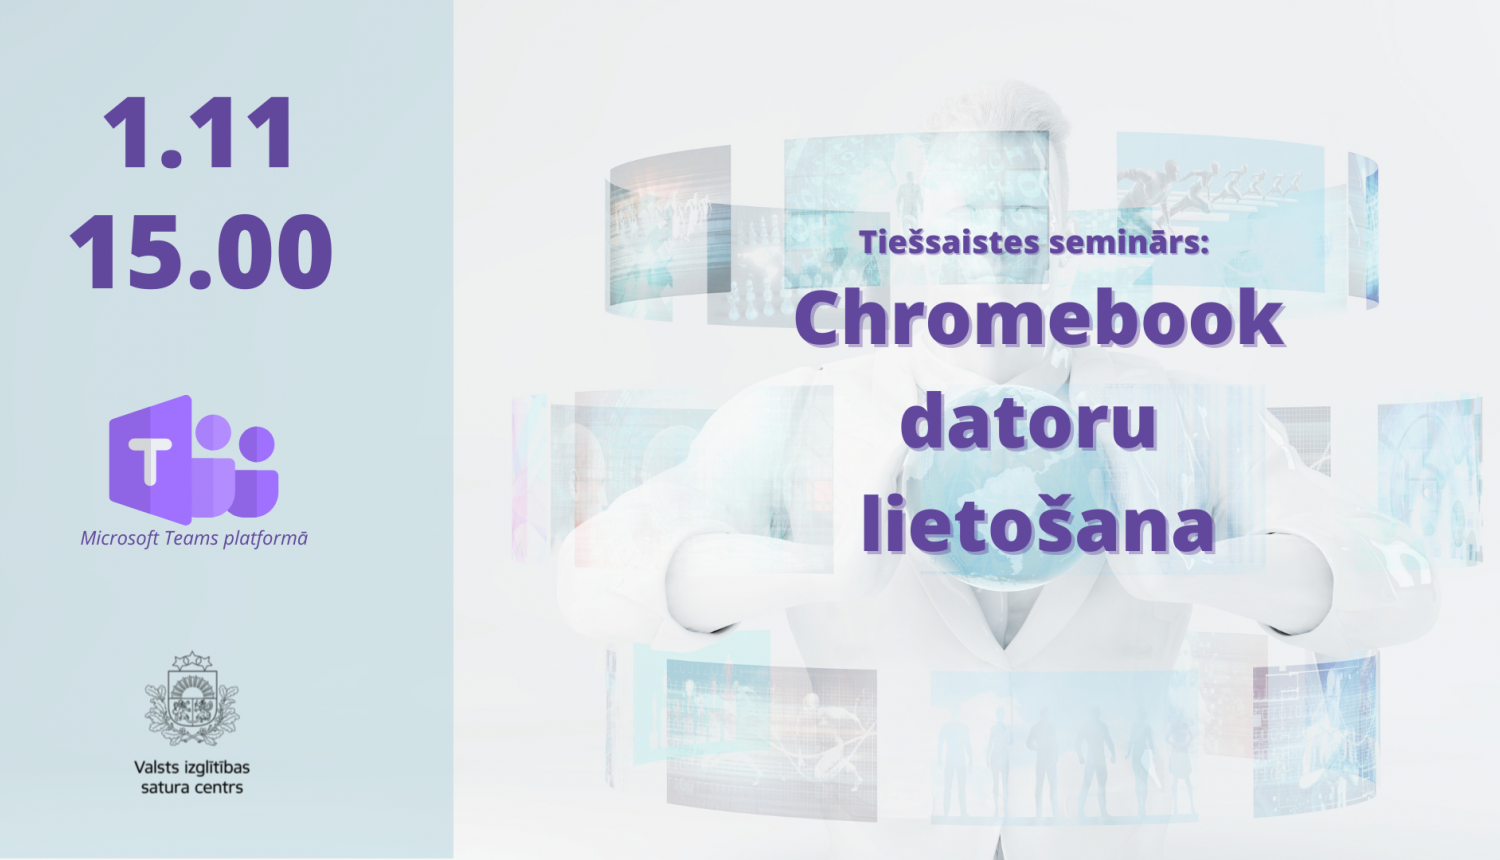 Chrome book daturu lietošanas seminārs